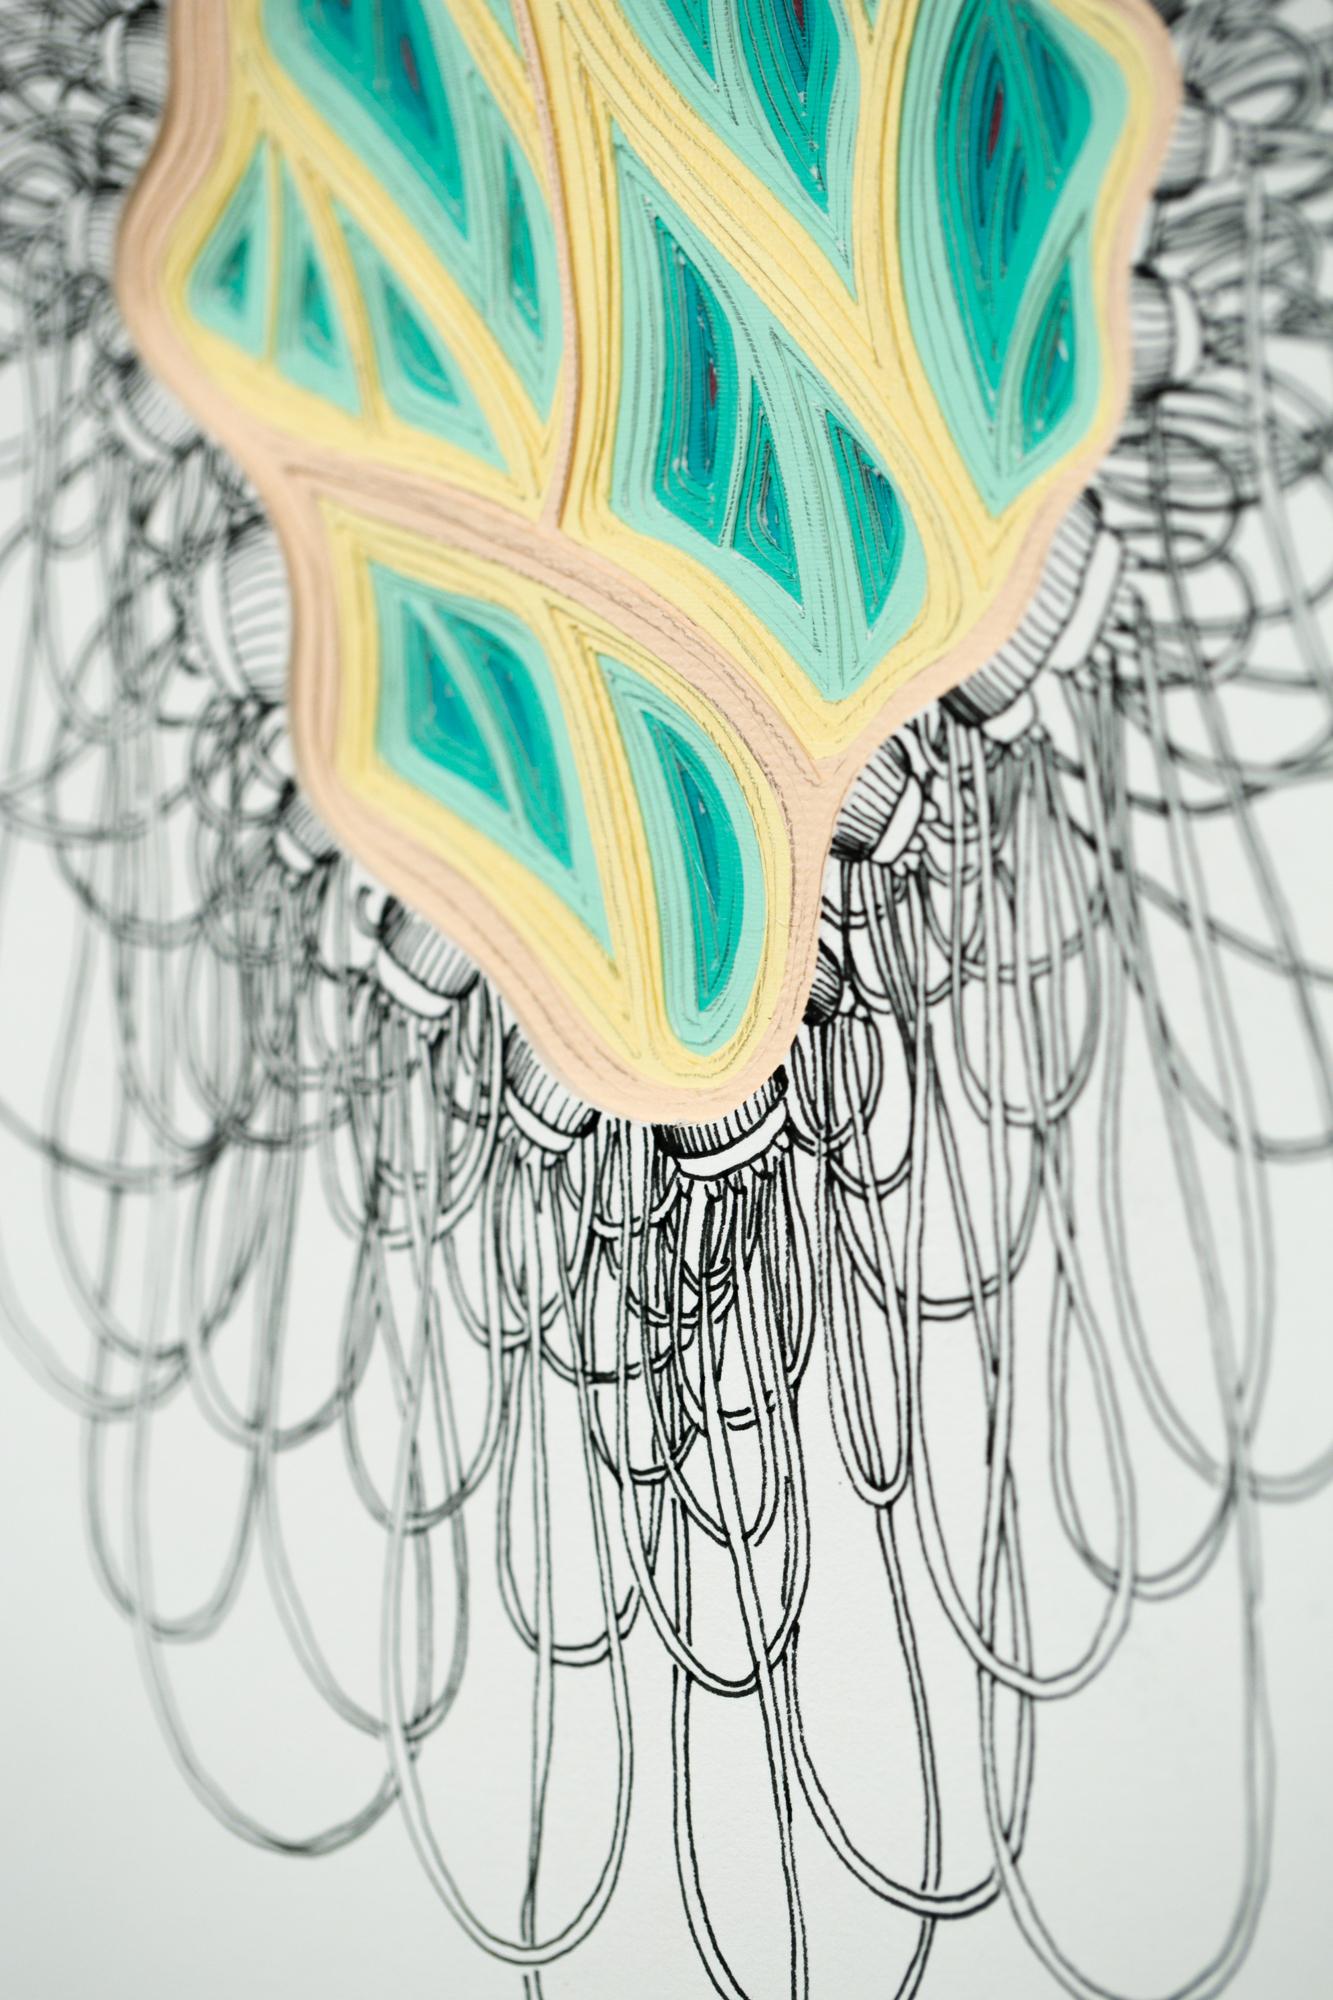 Phlebotomy-Bewegung #10 mit doppelter Schöpfkelle (Grau), Abstract Sculpture, von Charles Clary